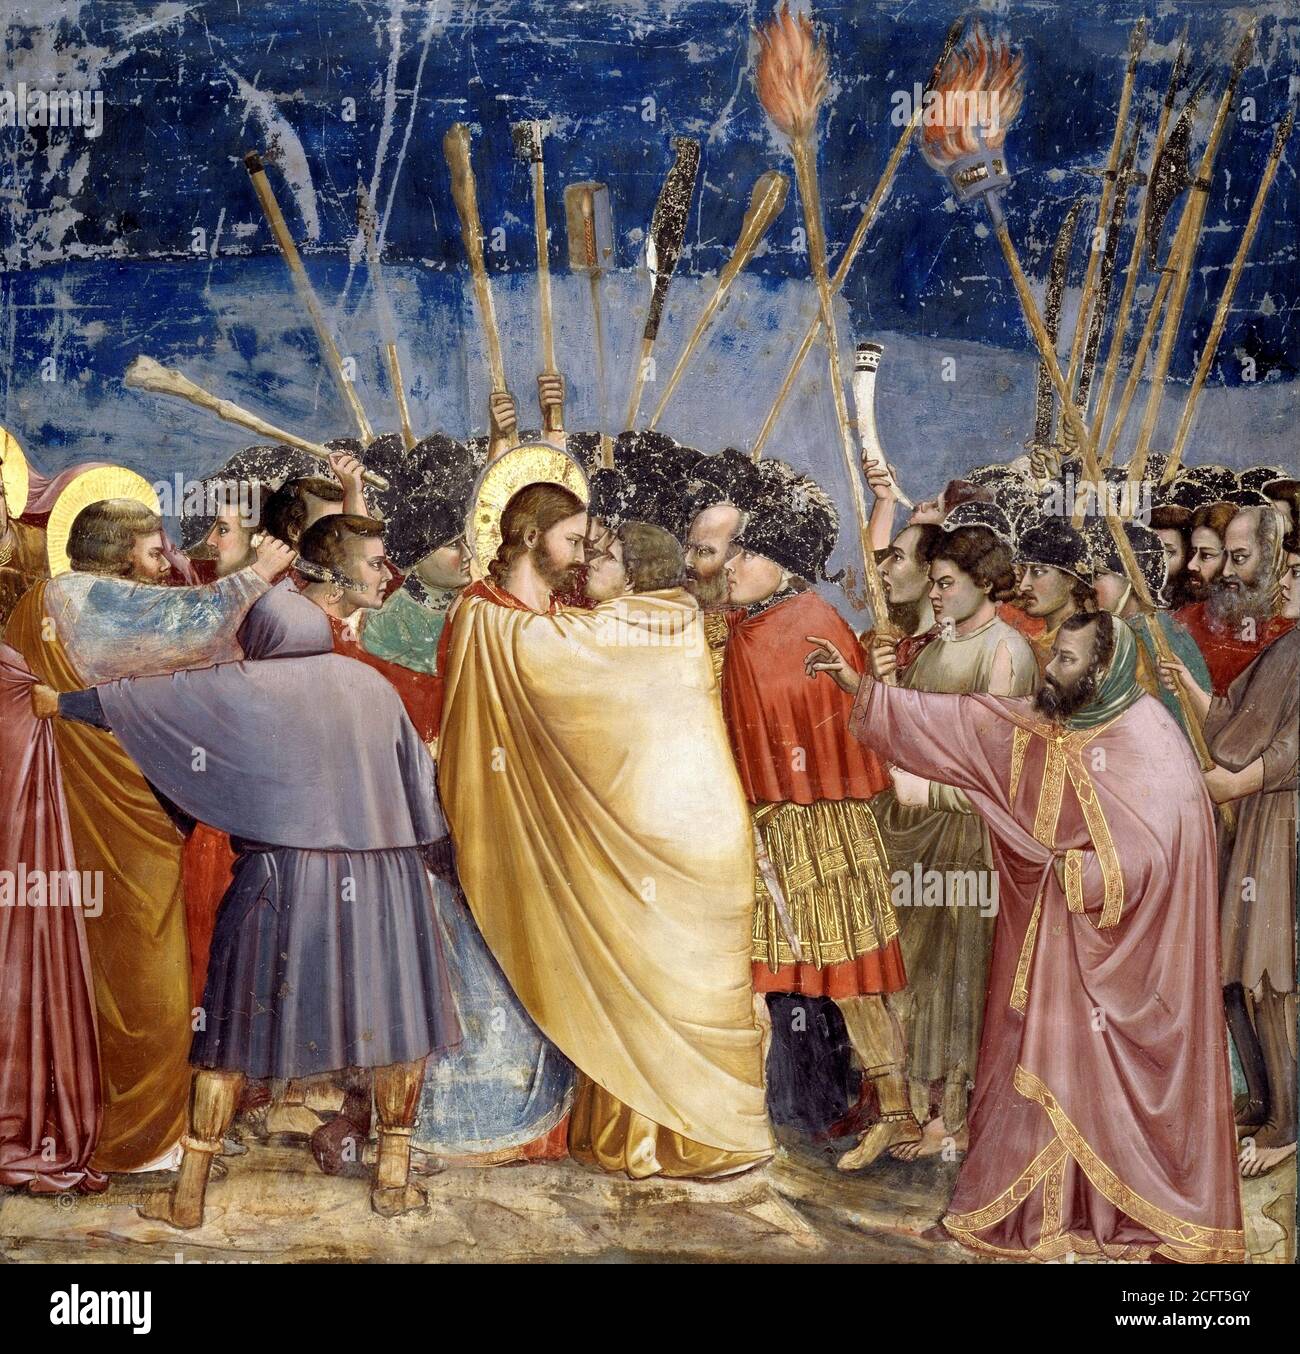 Giotto, Chapelle Scrovegni. Baiser de Judas, l'un des panneaux de la chapelle Scrovegni de Padoue, par Giotto di Bondone(v.1266-1337), fresque, v.1304-1306 Banque D'Images